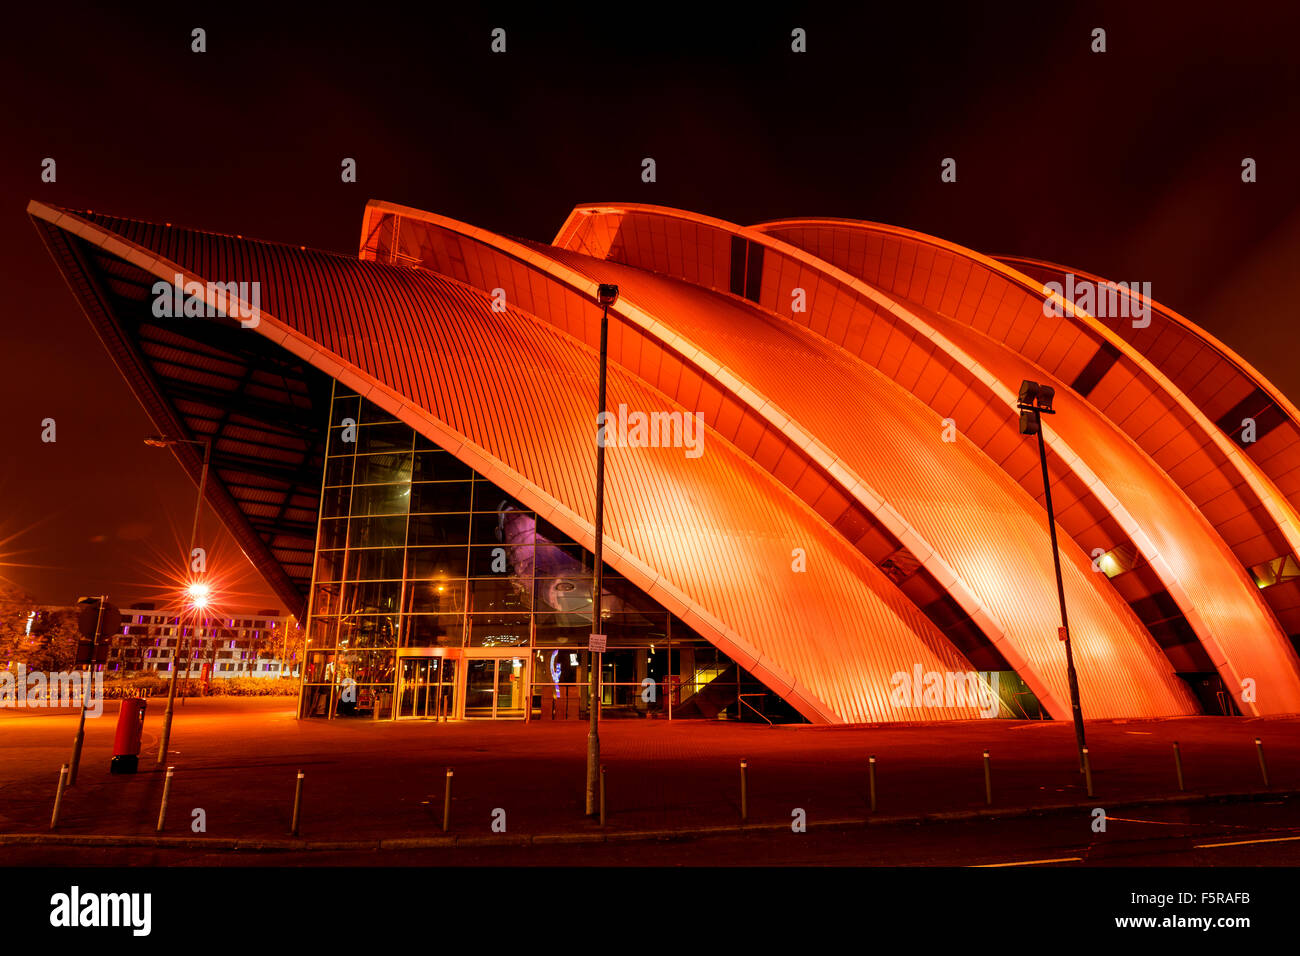 GLASGOW, SCHOTTLAND. 27. Oktober 2015: The Clyde Auditorium (Gürteltier) Concert Hall am Ufer des River Clyde, Glasgow, Schottland Stockfoto